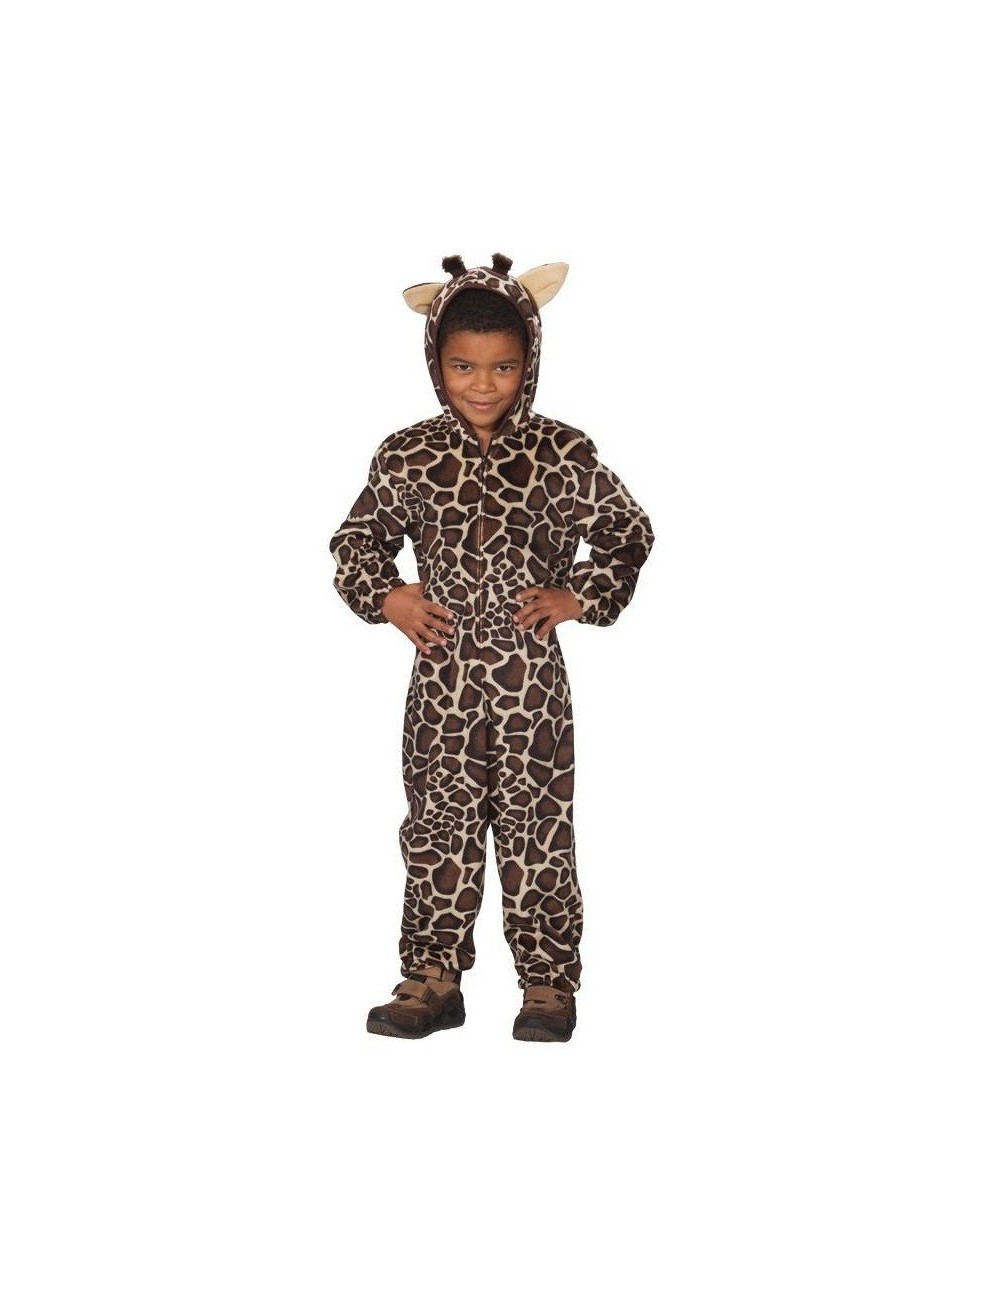 Costum Girafa, copii 4 - 6 ani